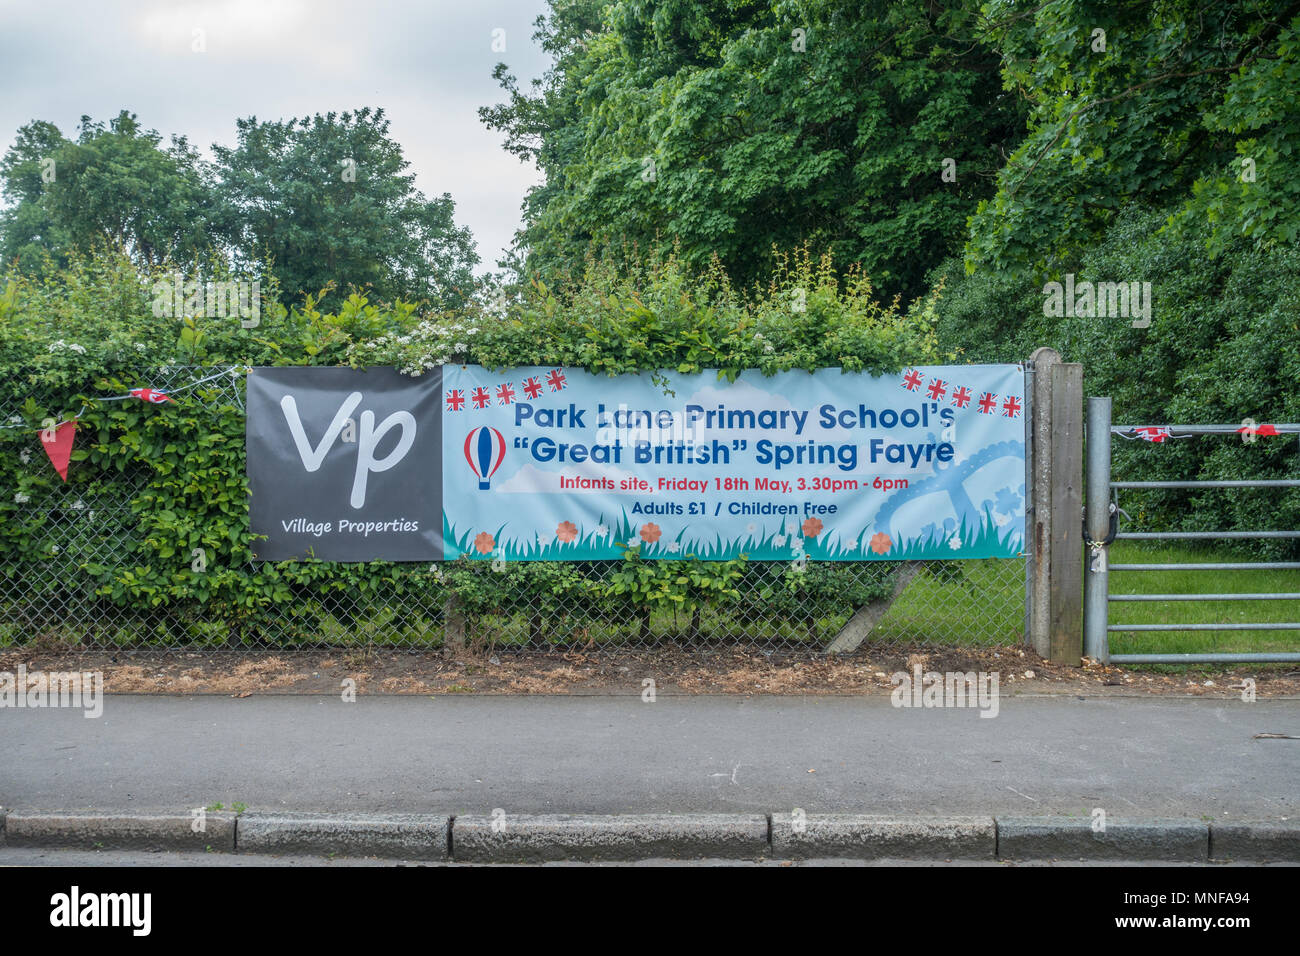 A banner on a fence advertising Park Lane primary School's spring Fayre in Tilehurst, Reading, UK Stock Photo